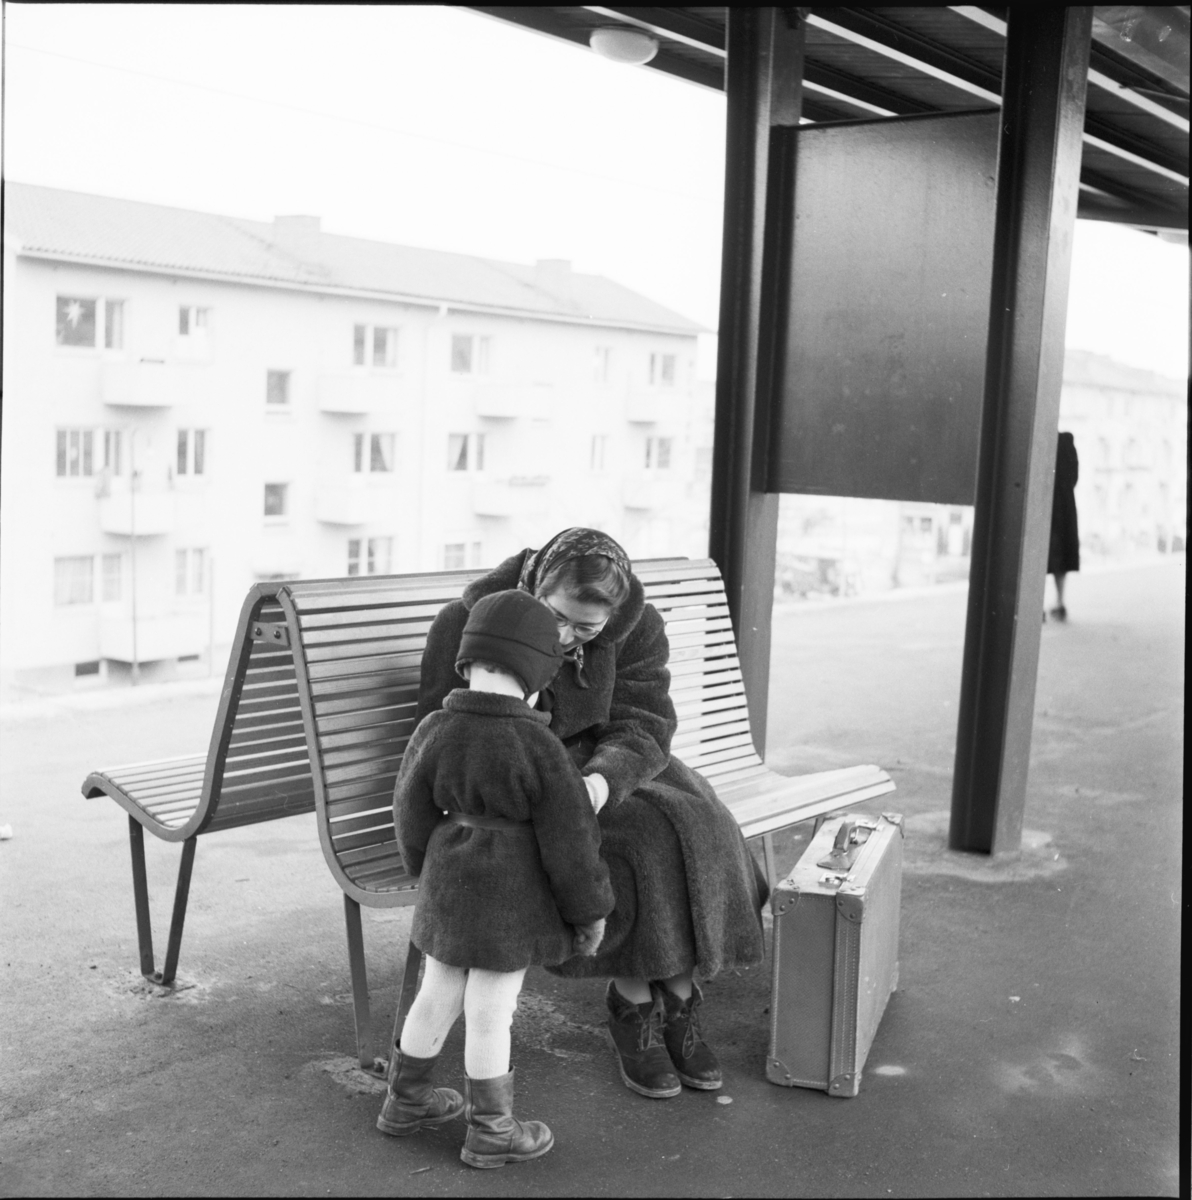 Västra tunnelbanan, tunnelbanebänk med kvinna och barn.